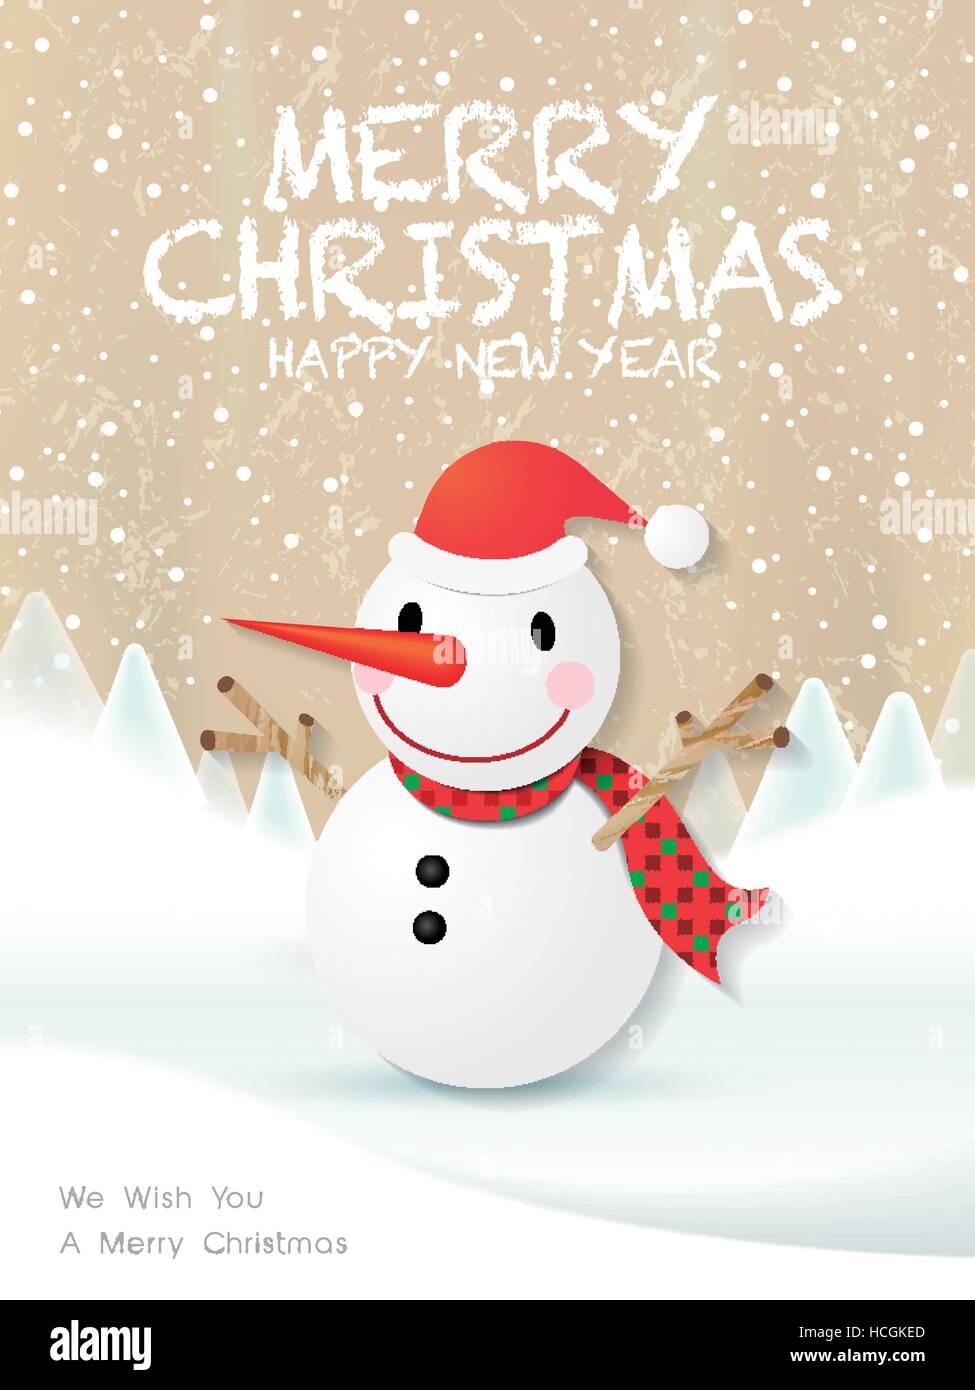 lovely cartoon Christmas snowman over snowy background Stock Vector